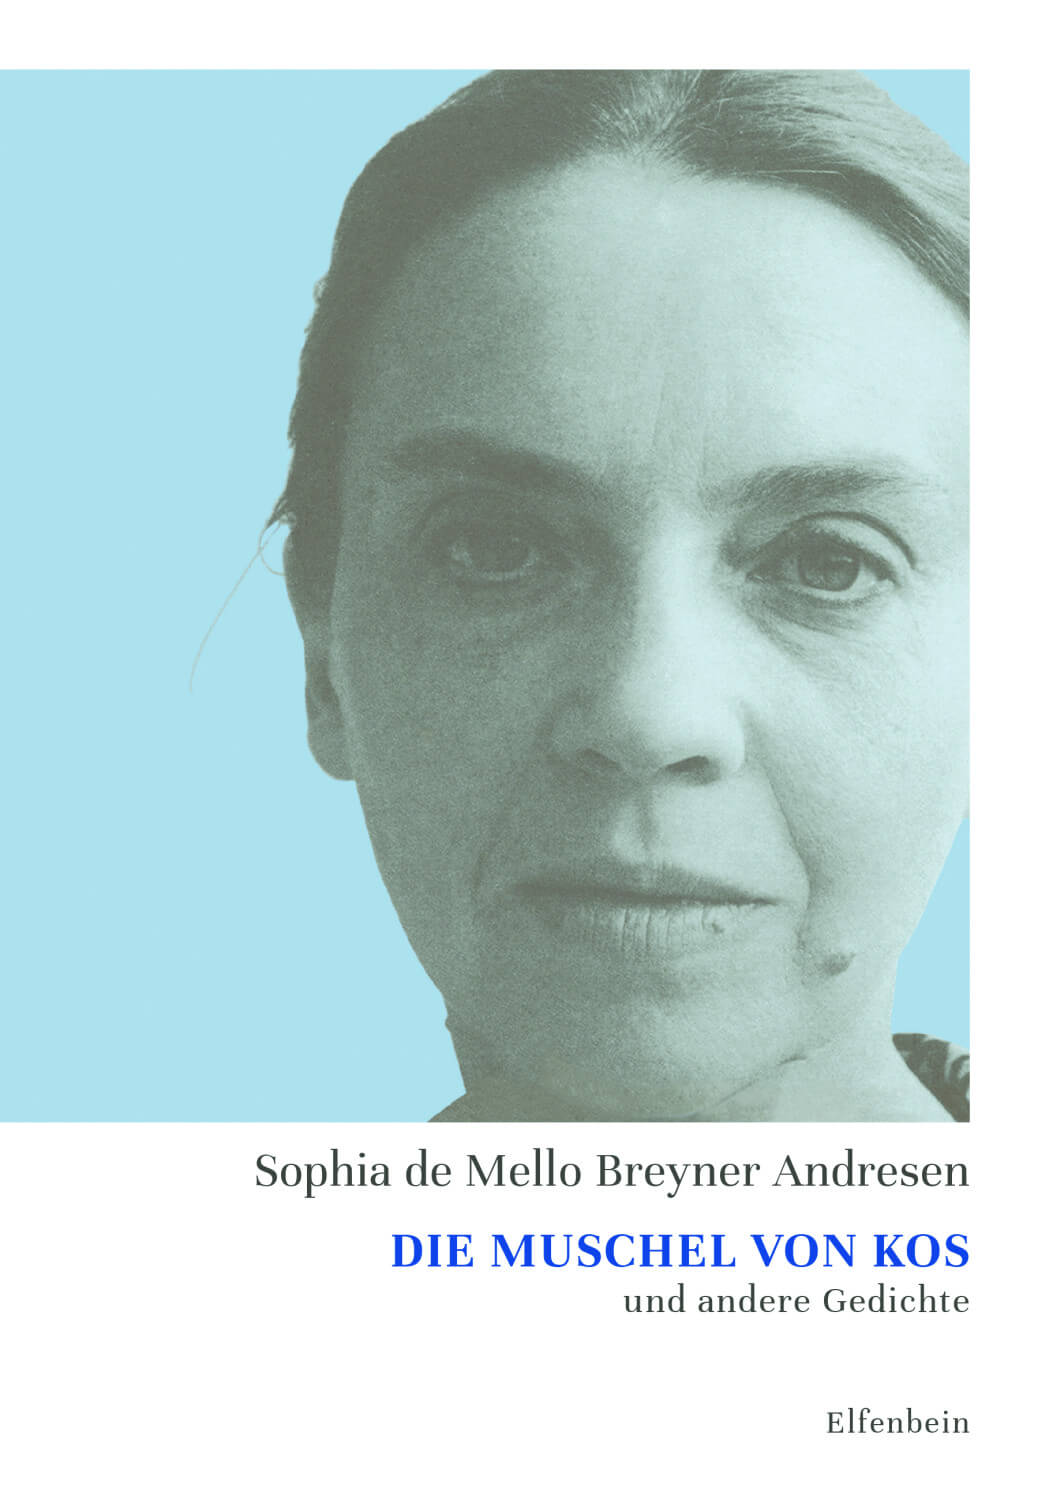 Sophia de Mello Breyner Andresen: Die Muschel von Kos und andere Gedichte